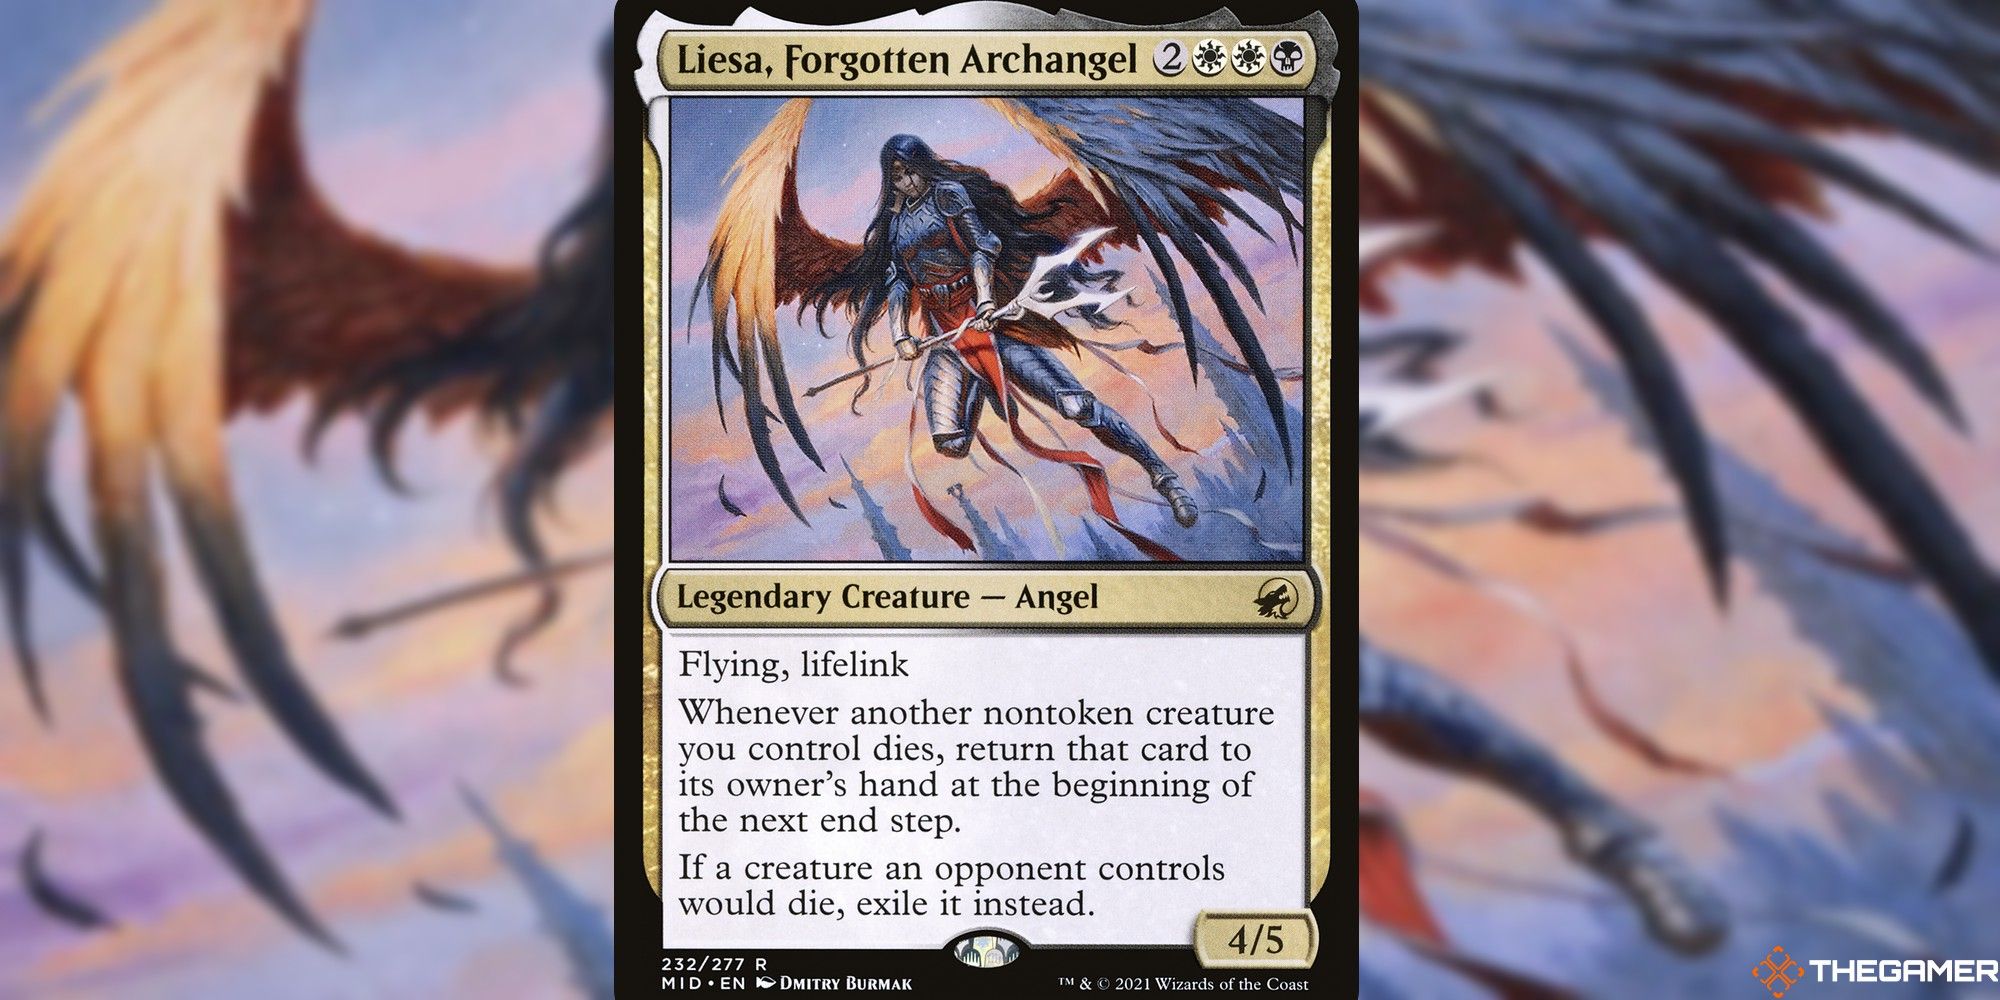 mtg liesa forgotten archangel full card and art background